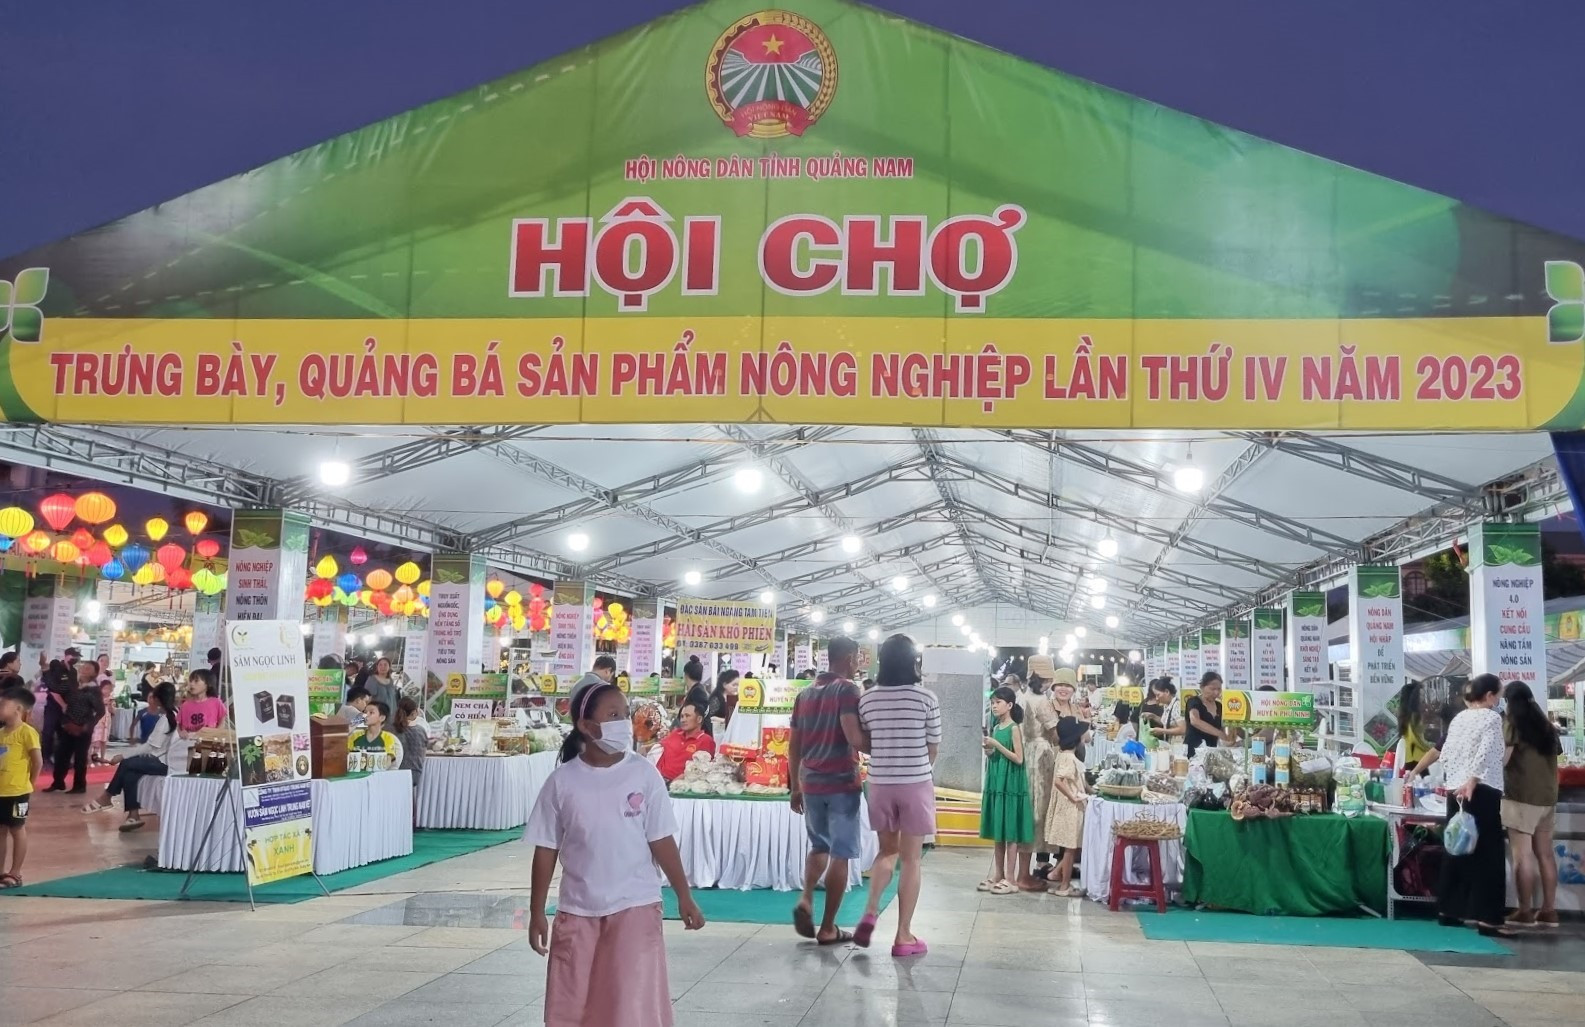 Trung tâm Văn hóa Quảng Nam là điểm tổ chức hội chợ duy nhất ở Tam Kỳ. Ảnh: C.N